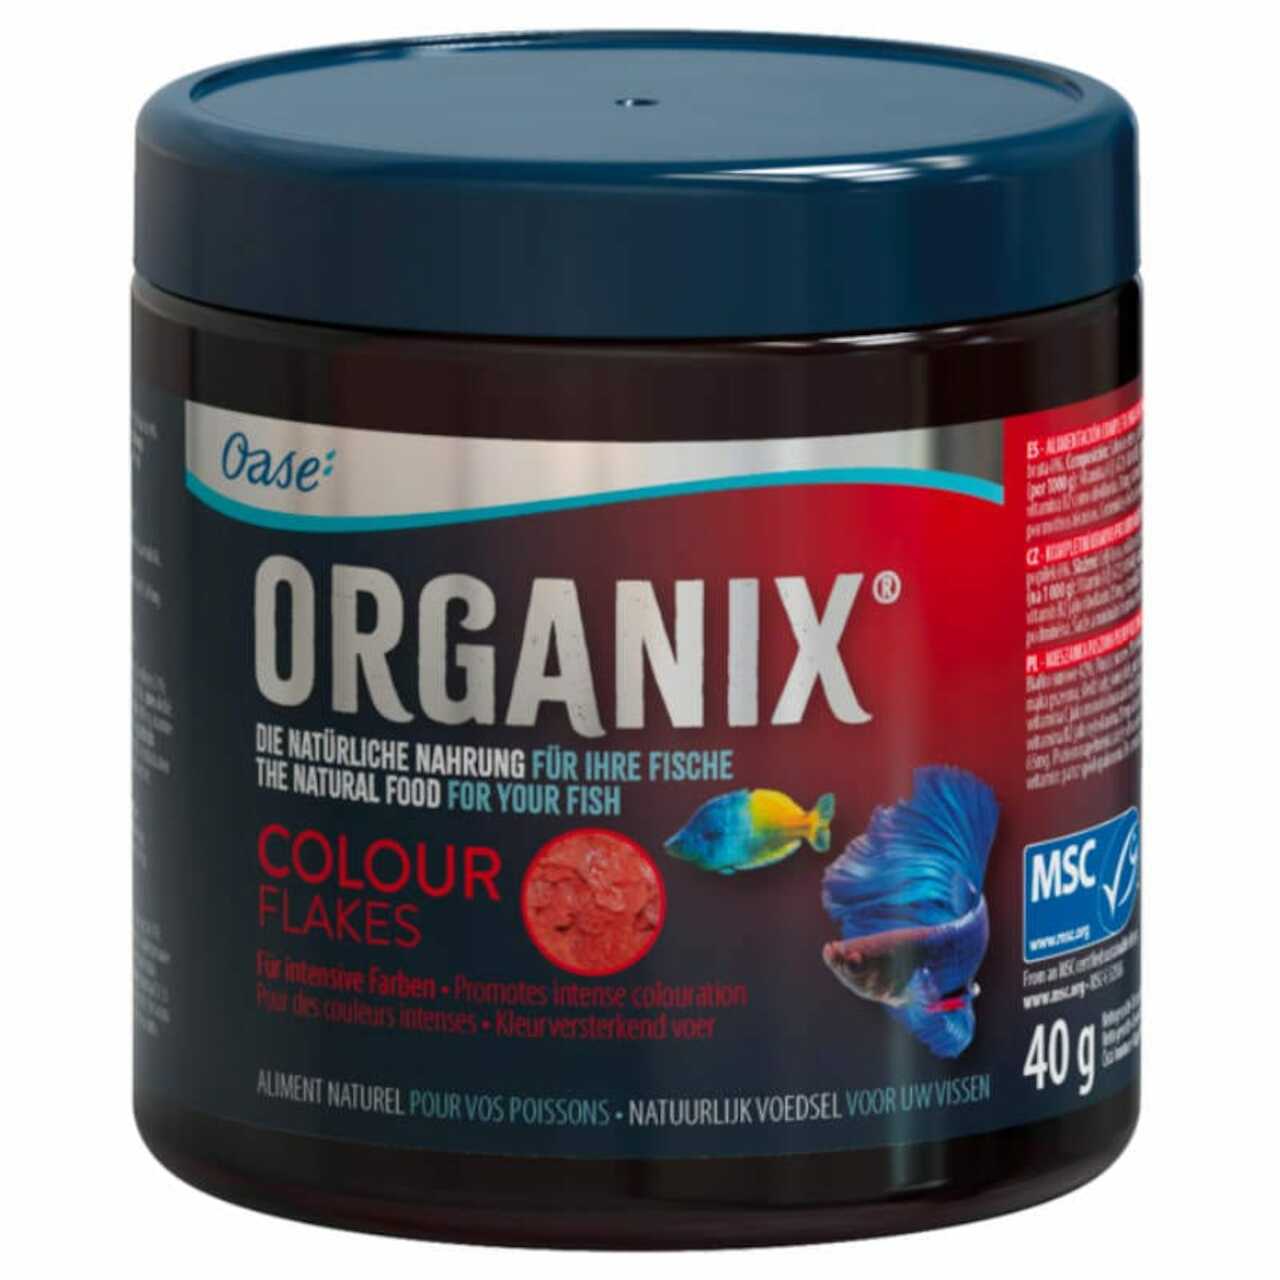 Oase Organix Colour Flakes